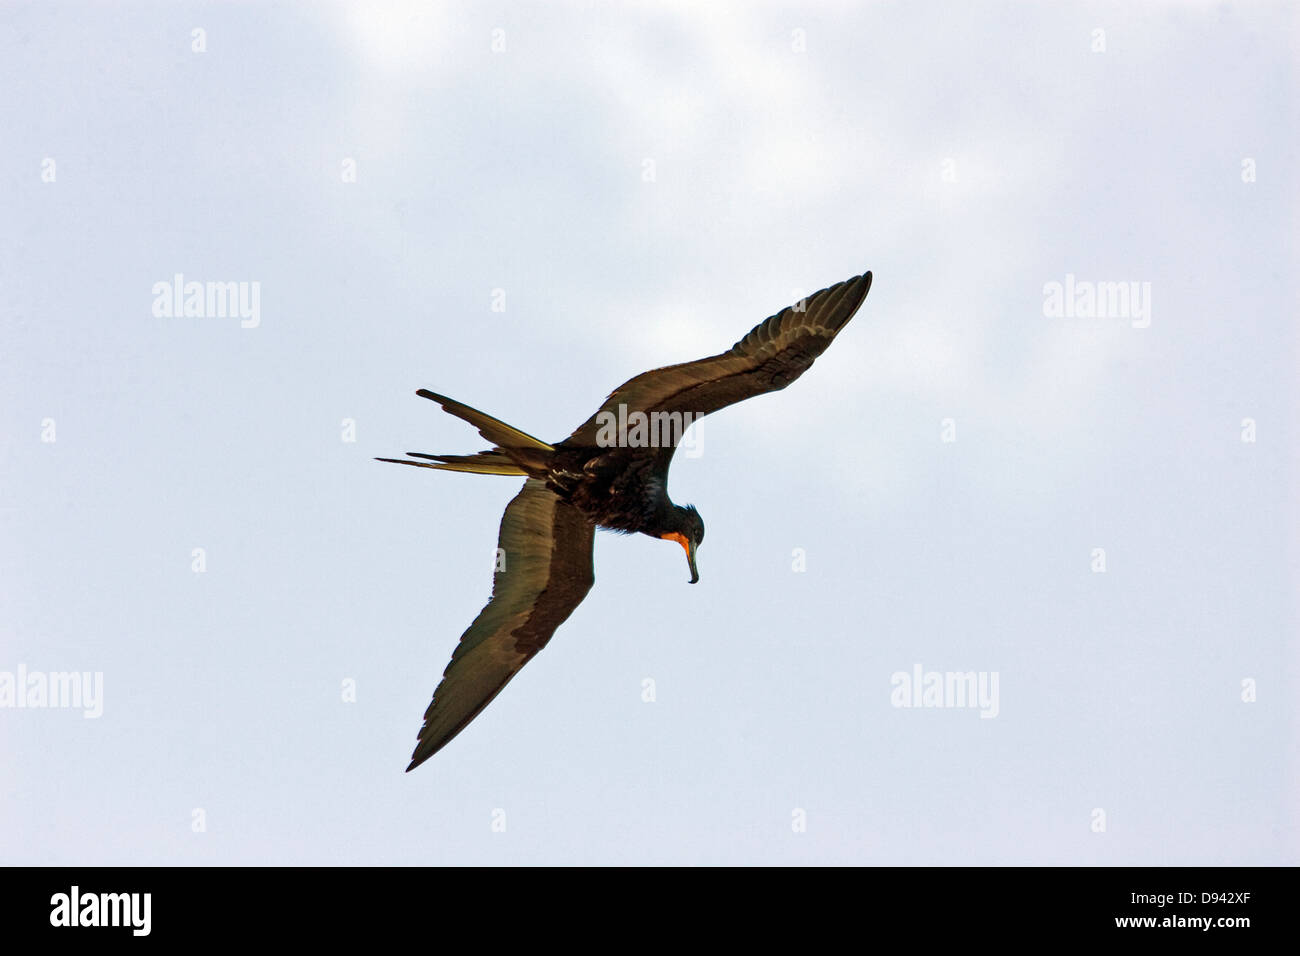 A flying big bird, Mexico. Stock Photo